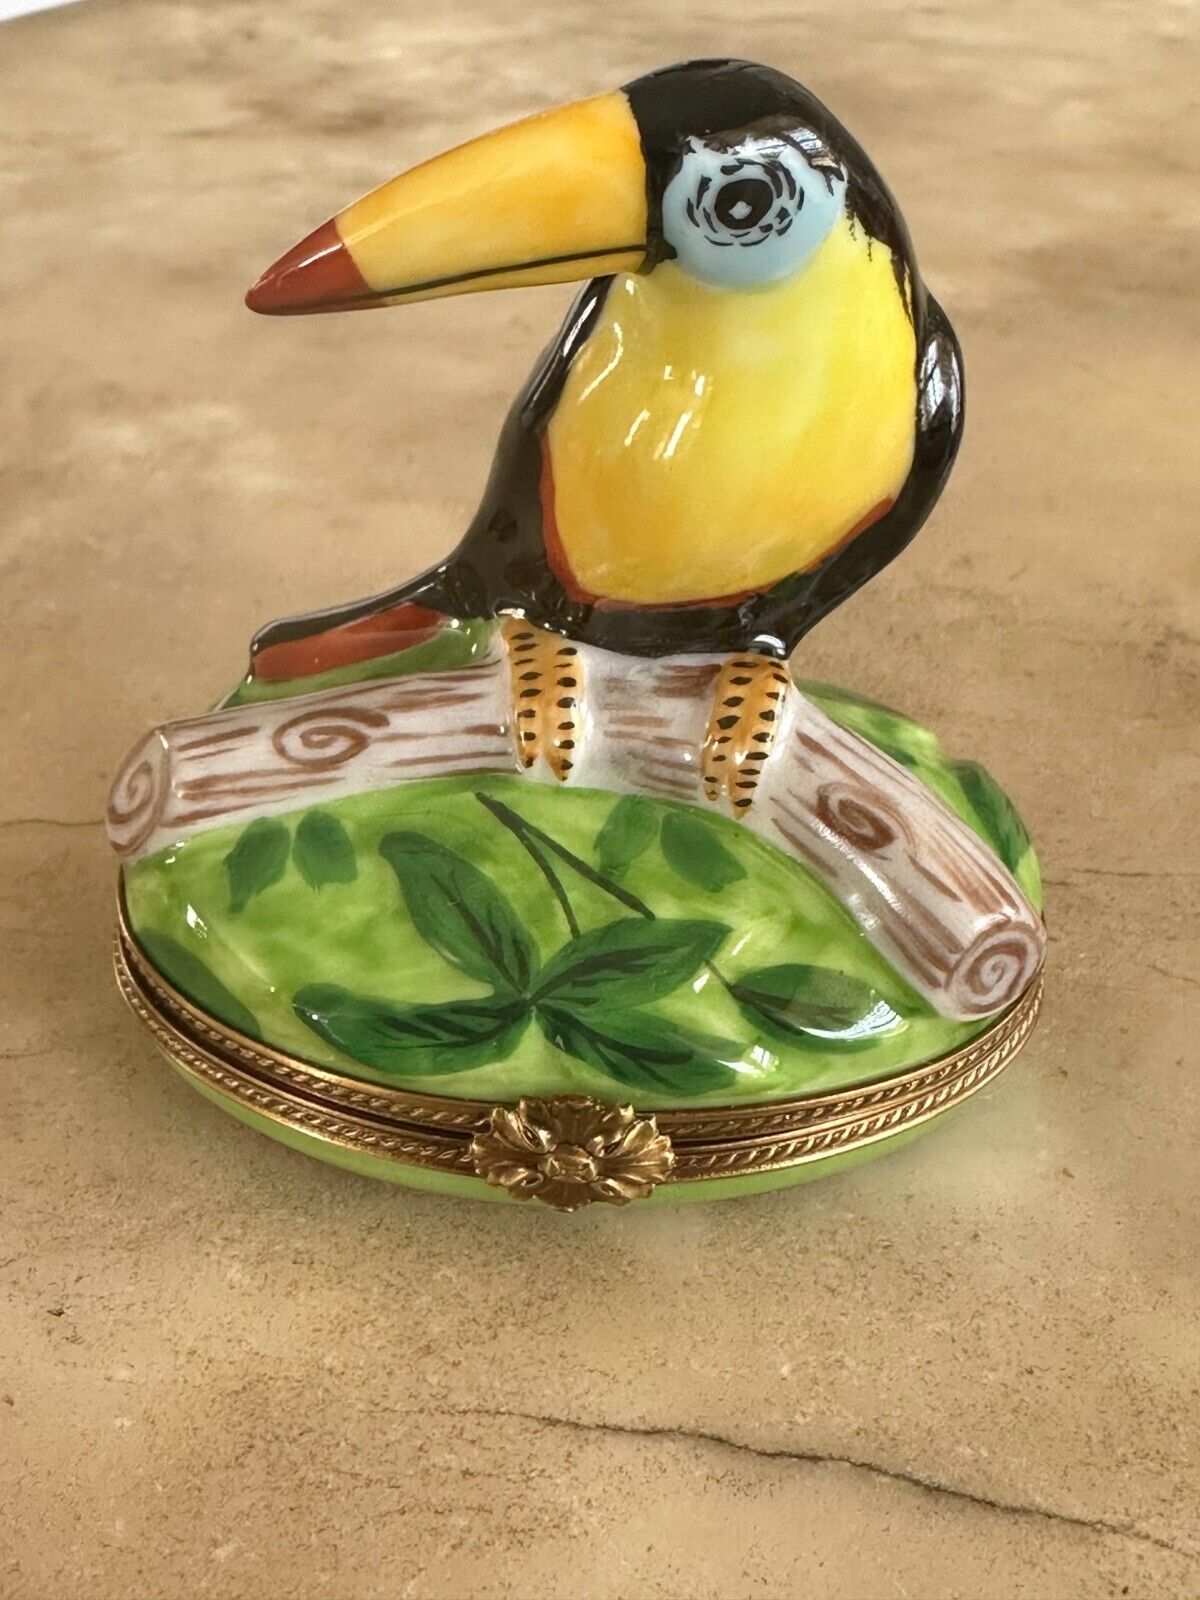 P V Parry Vielle Limoges France Porcelain Toucan Bird Trinket Box Peint Main